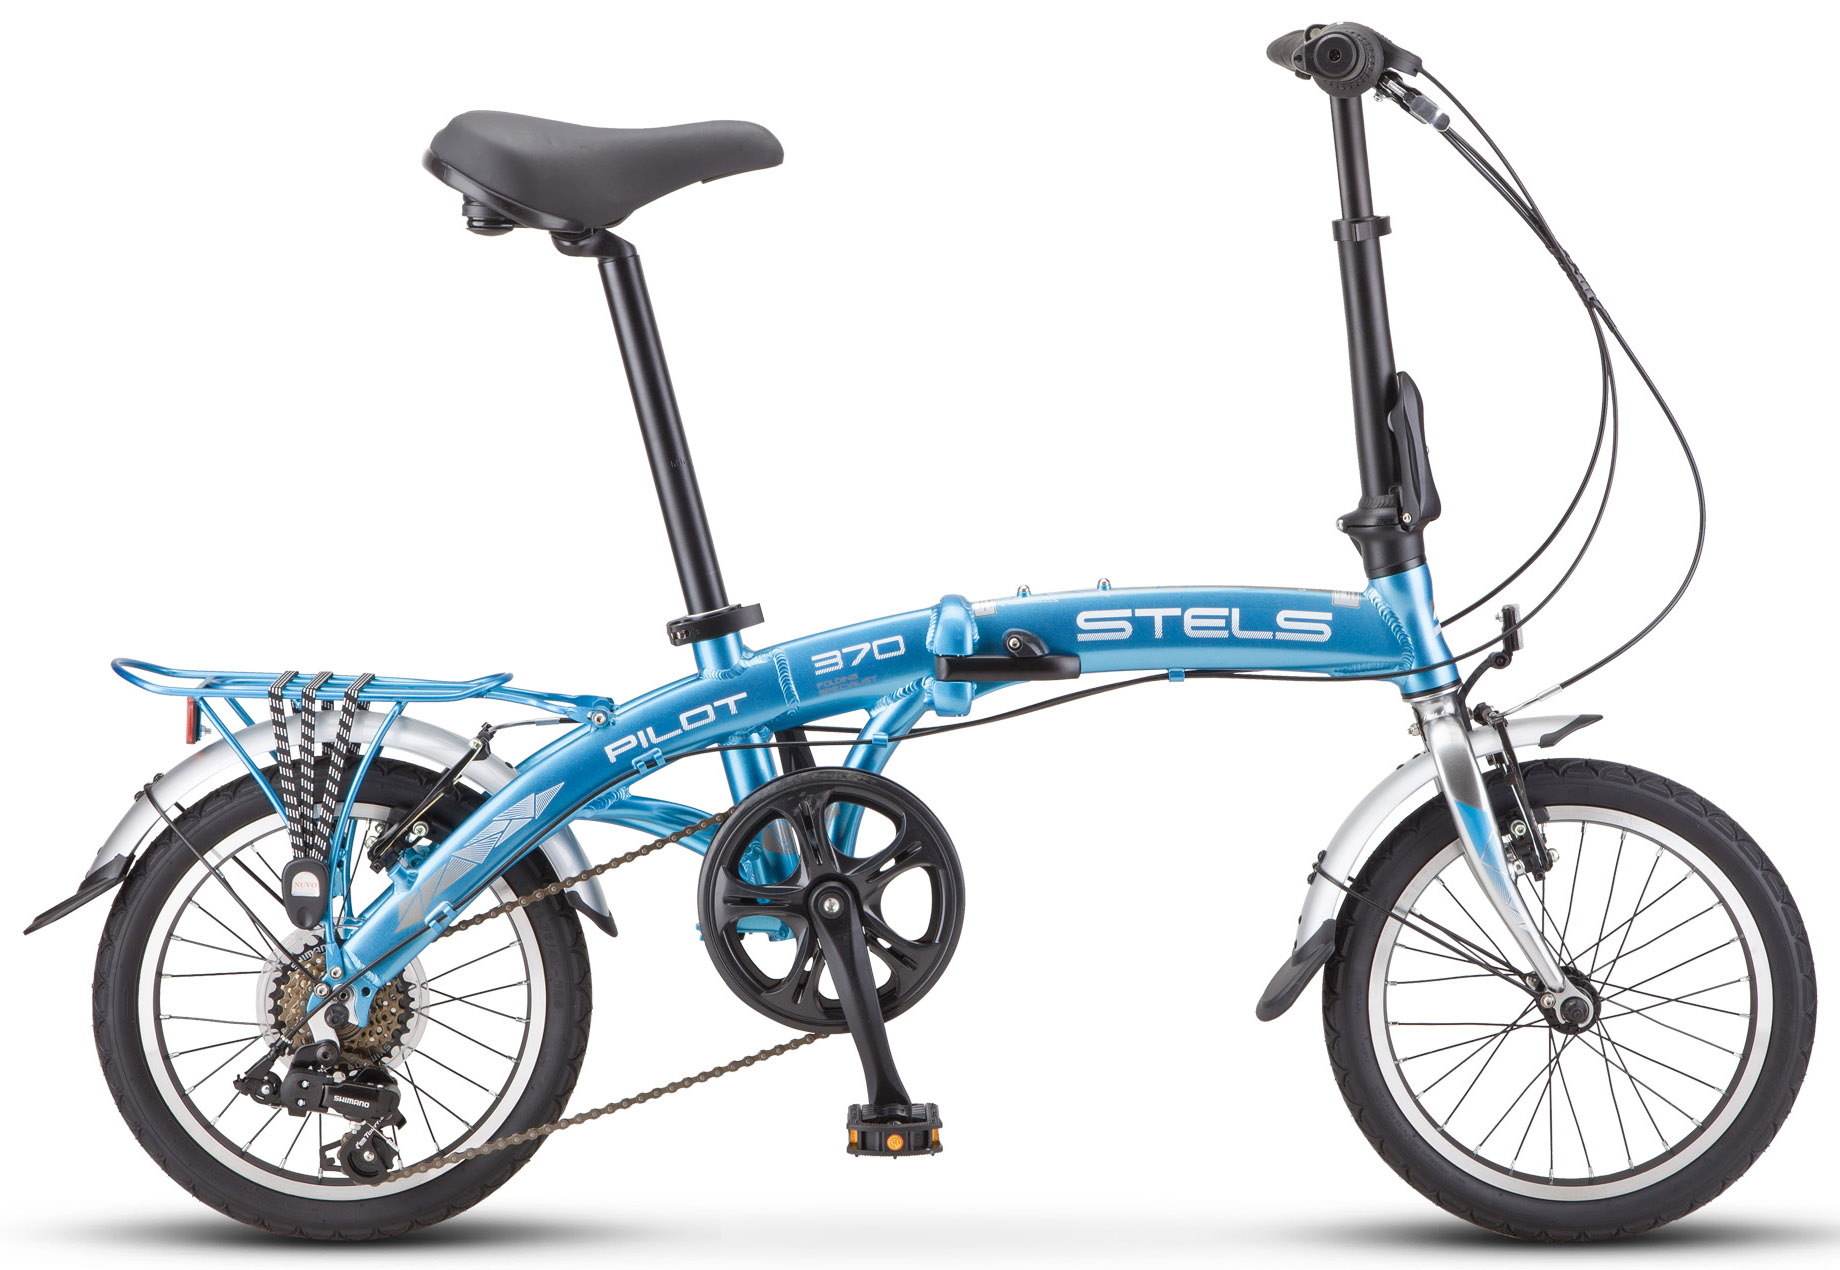  Отзывы о Детском велосипеде Stels Pilot 370 16 (V010) 2019